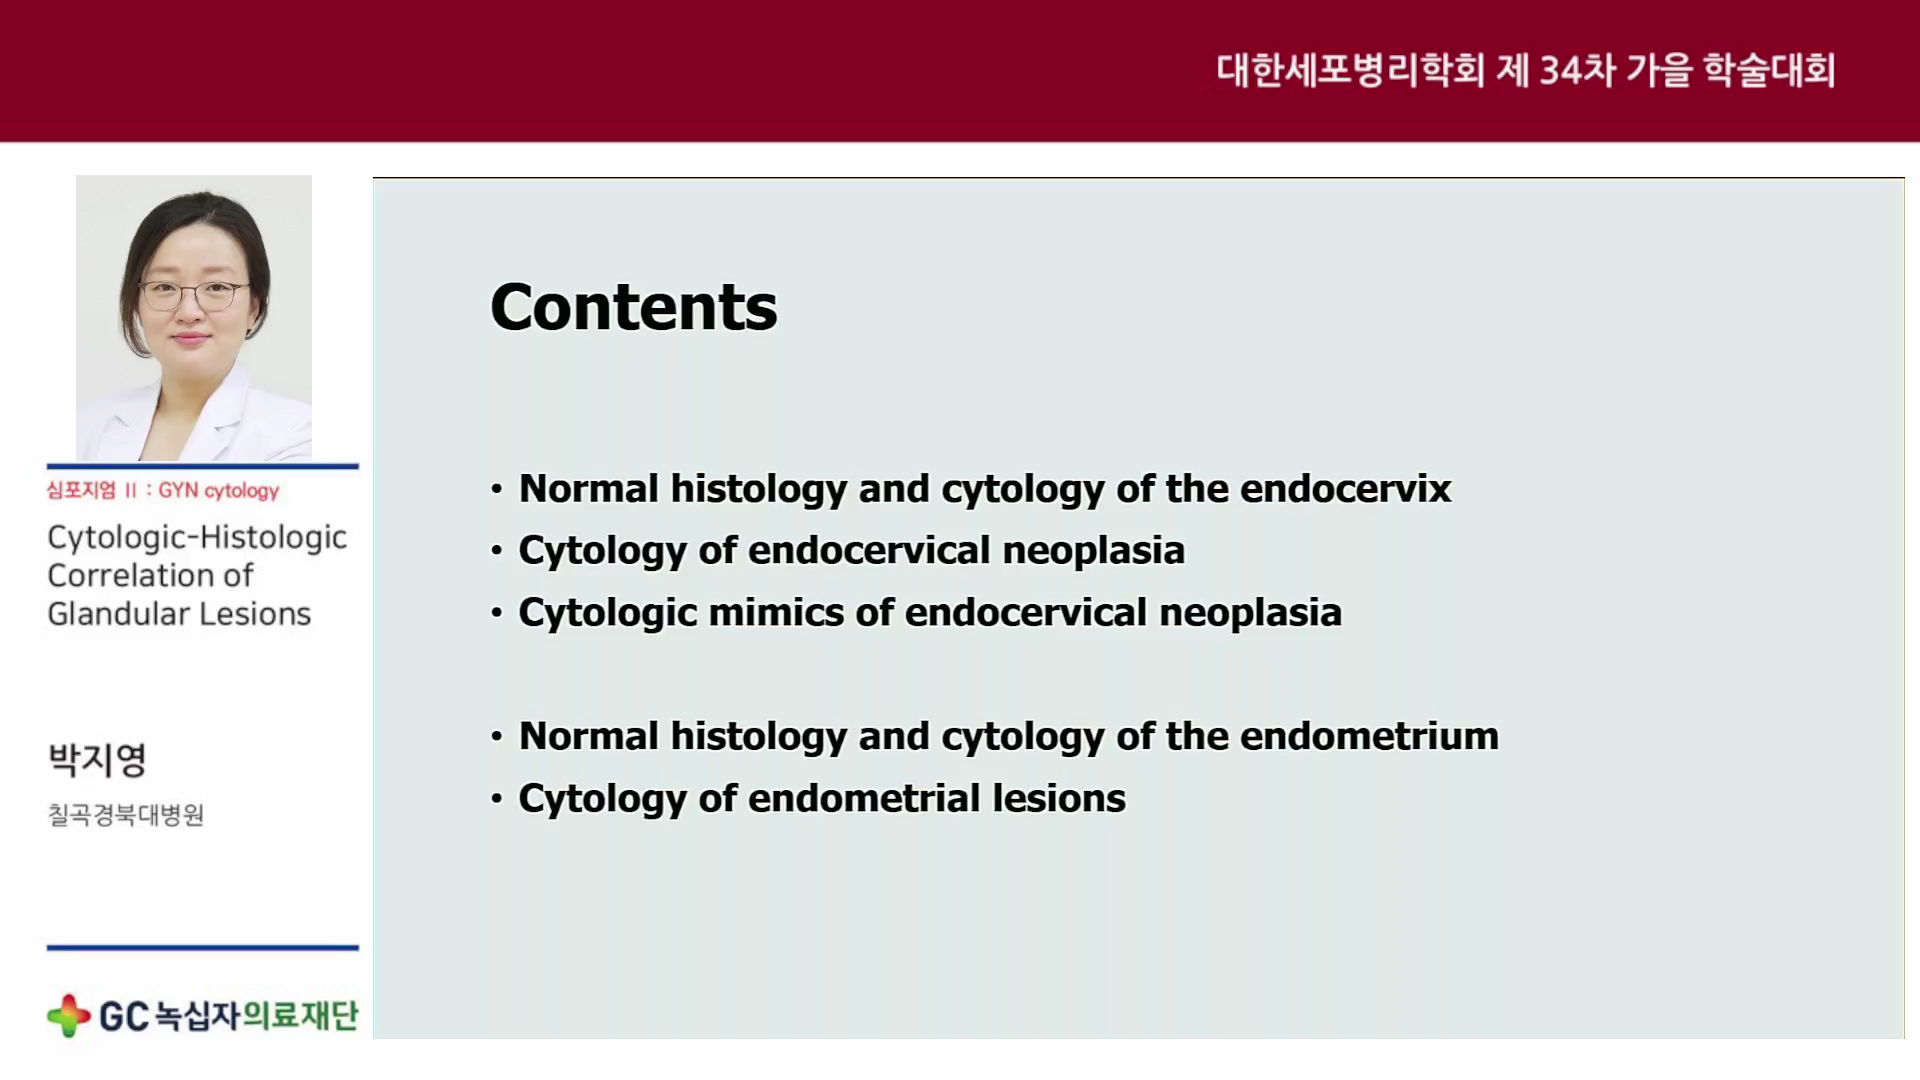 Cytologic-Histologic Correlation of Glandular Lesions